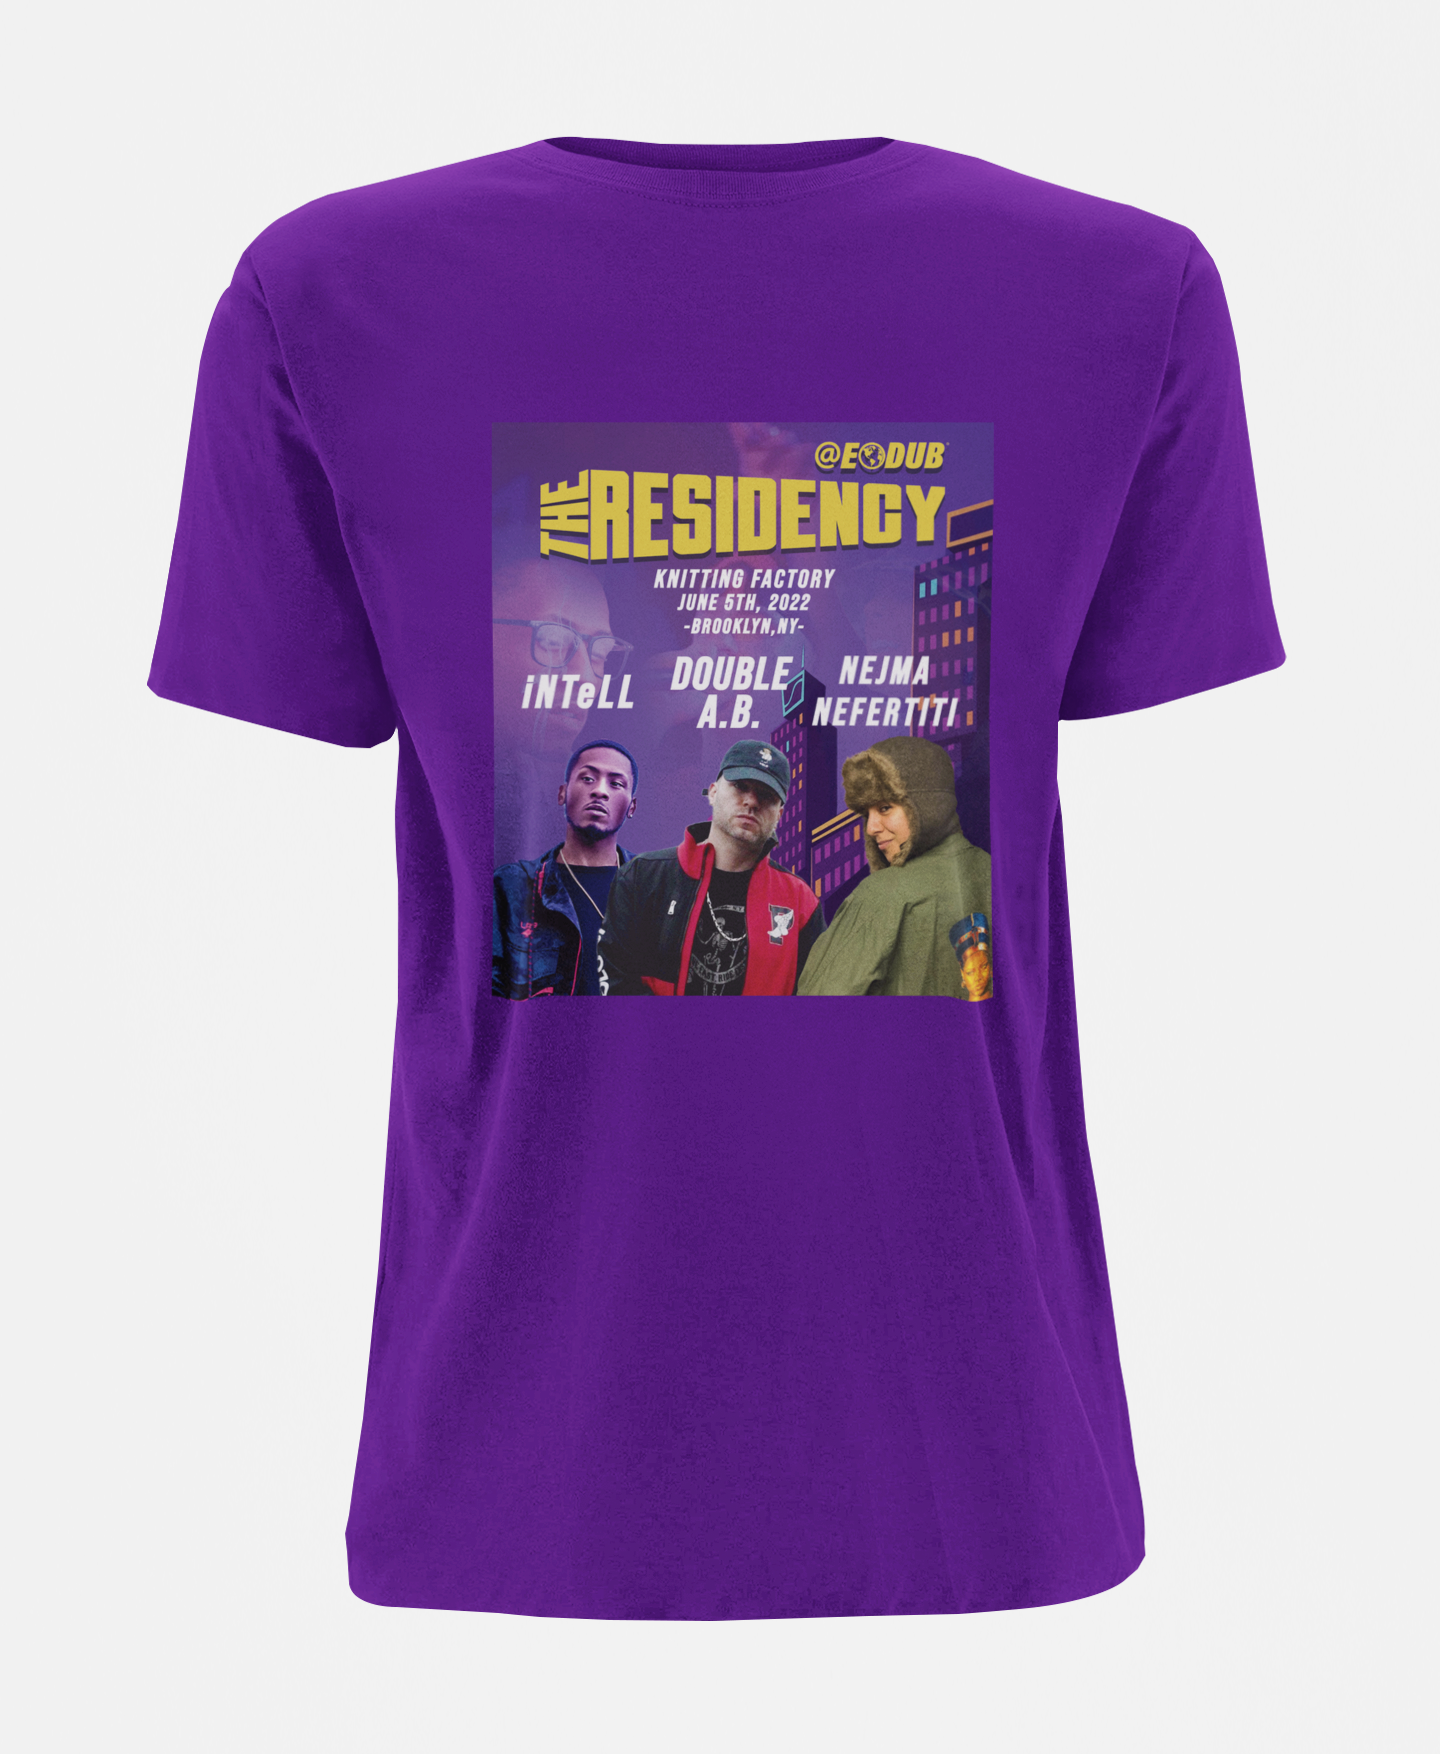 EODUB's The Residency Season 1 Purple Logo T Shirt